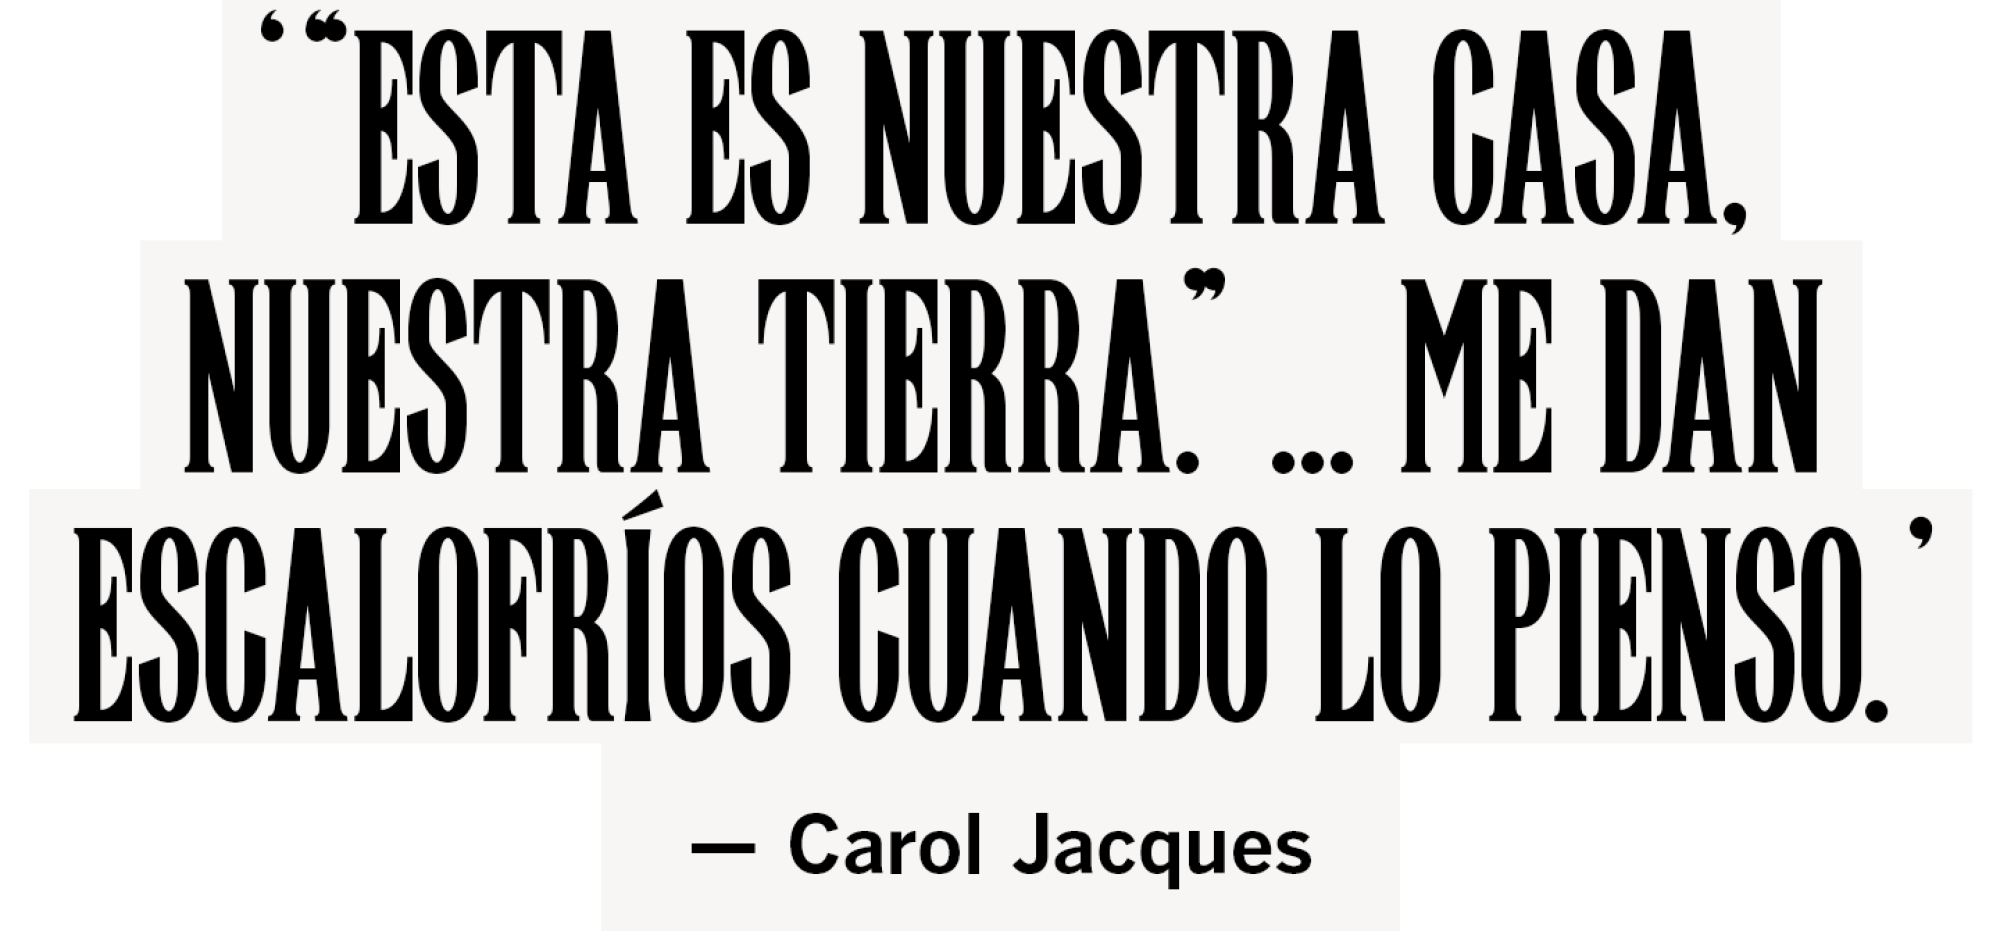 ‘ “Esta es nuestra casa, nuestra tierra.” ... Me dan escalofríos cuando lo pienso. ’ Carol Jacques